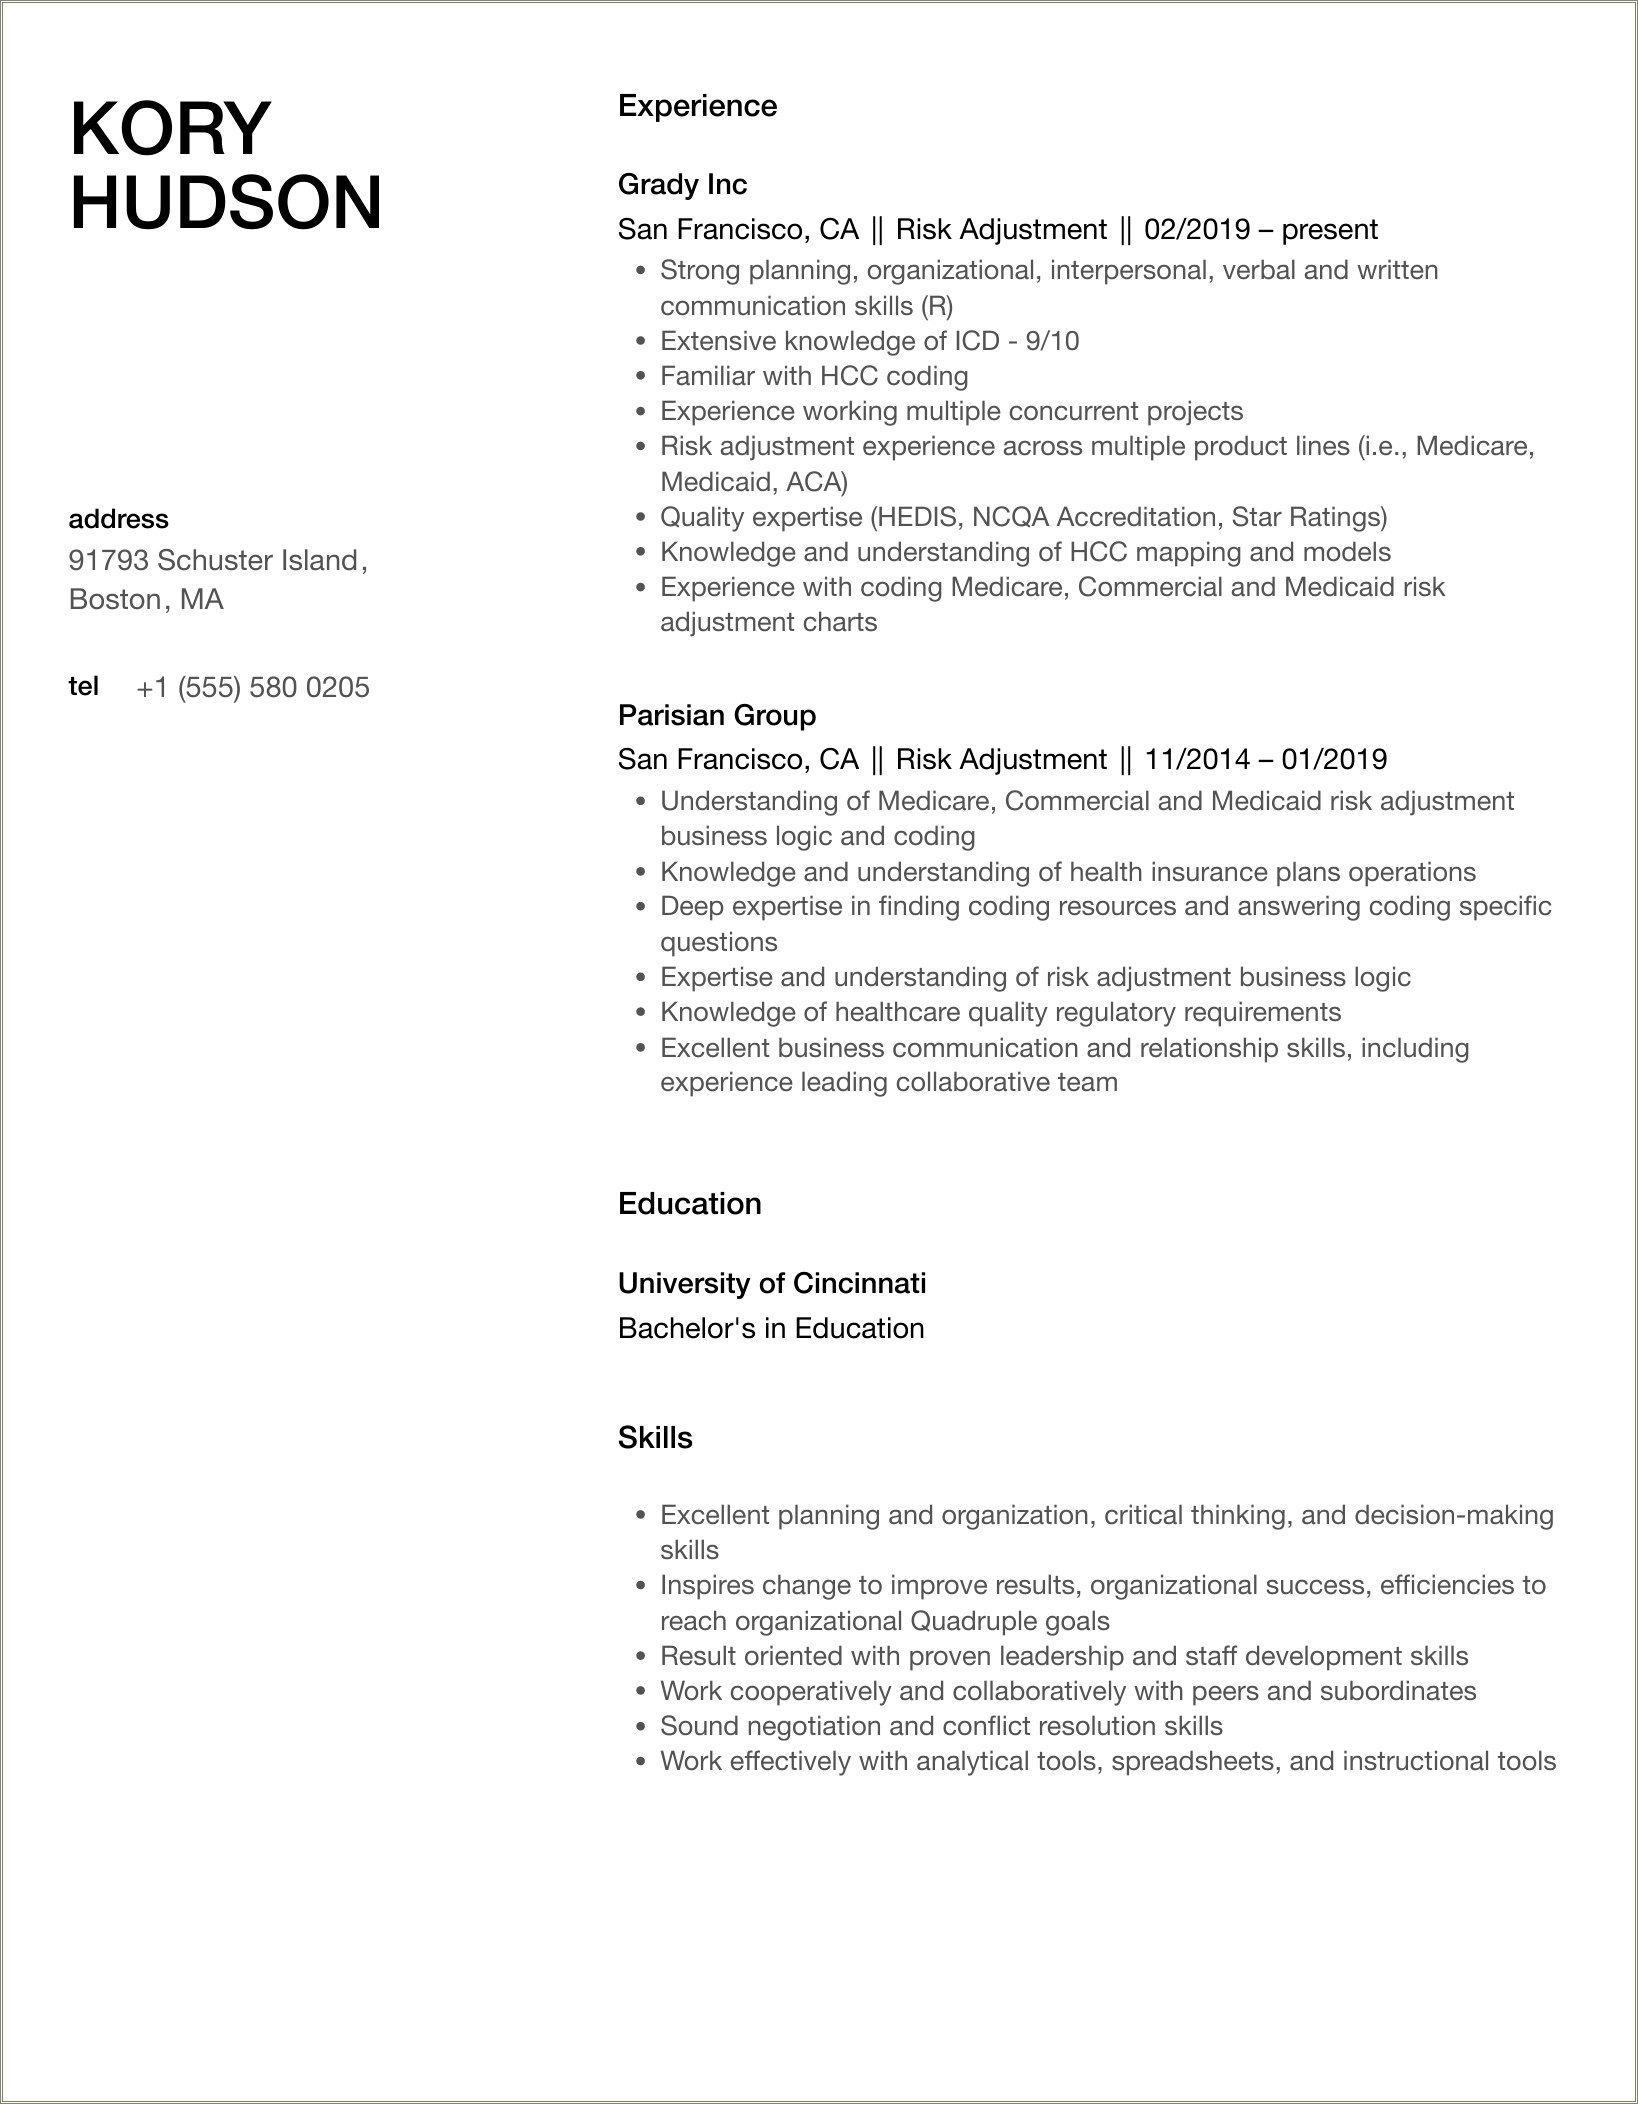 Cms Risk Adjustment Model Job Resume